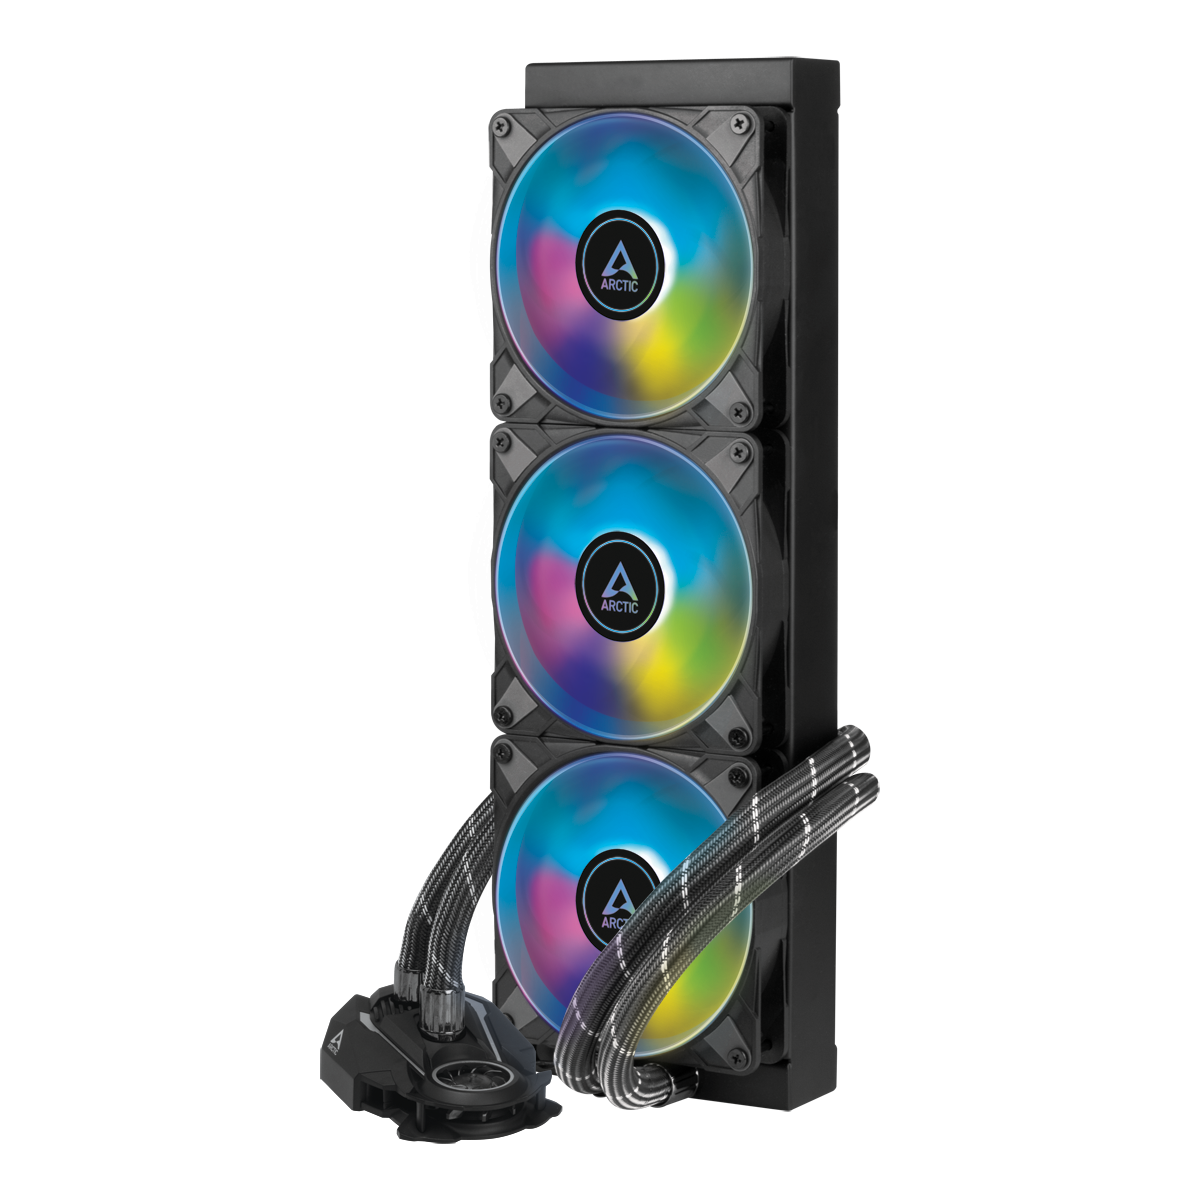 Охладител за процесор Arctic Freezer II A-RGB (360mm), водно охлаждане, ACFRE00101A AMD/Intel-4